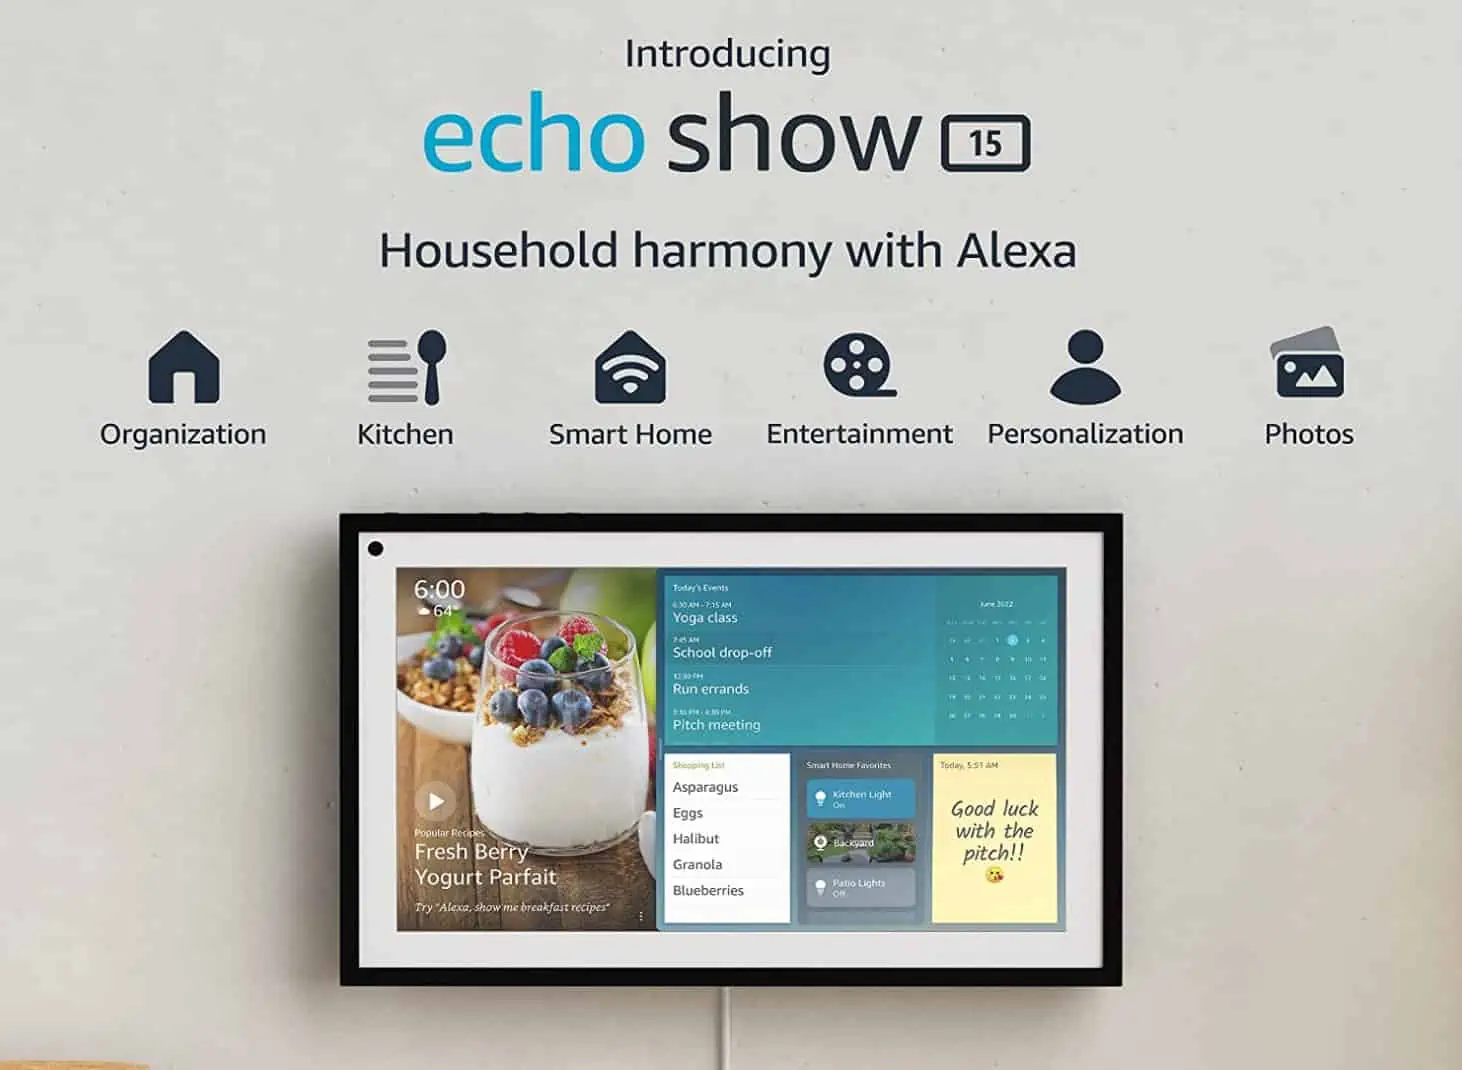 アマゾンは、Alexaを搭載した15インチのスマートディスプレイであるEcho Show15を発表しました